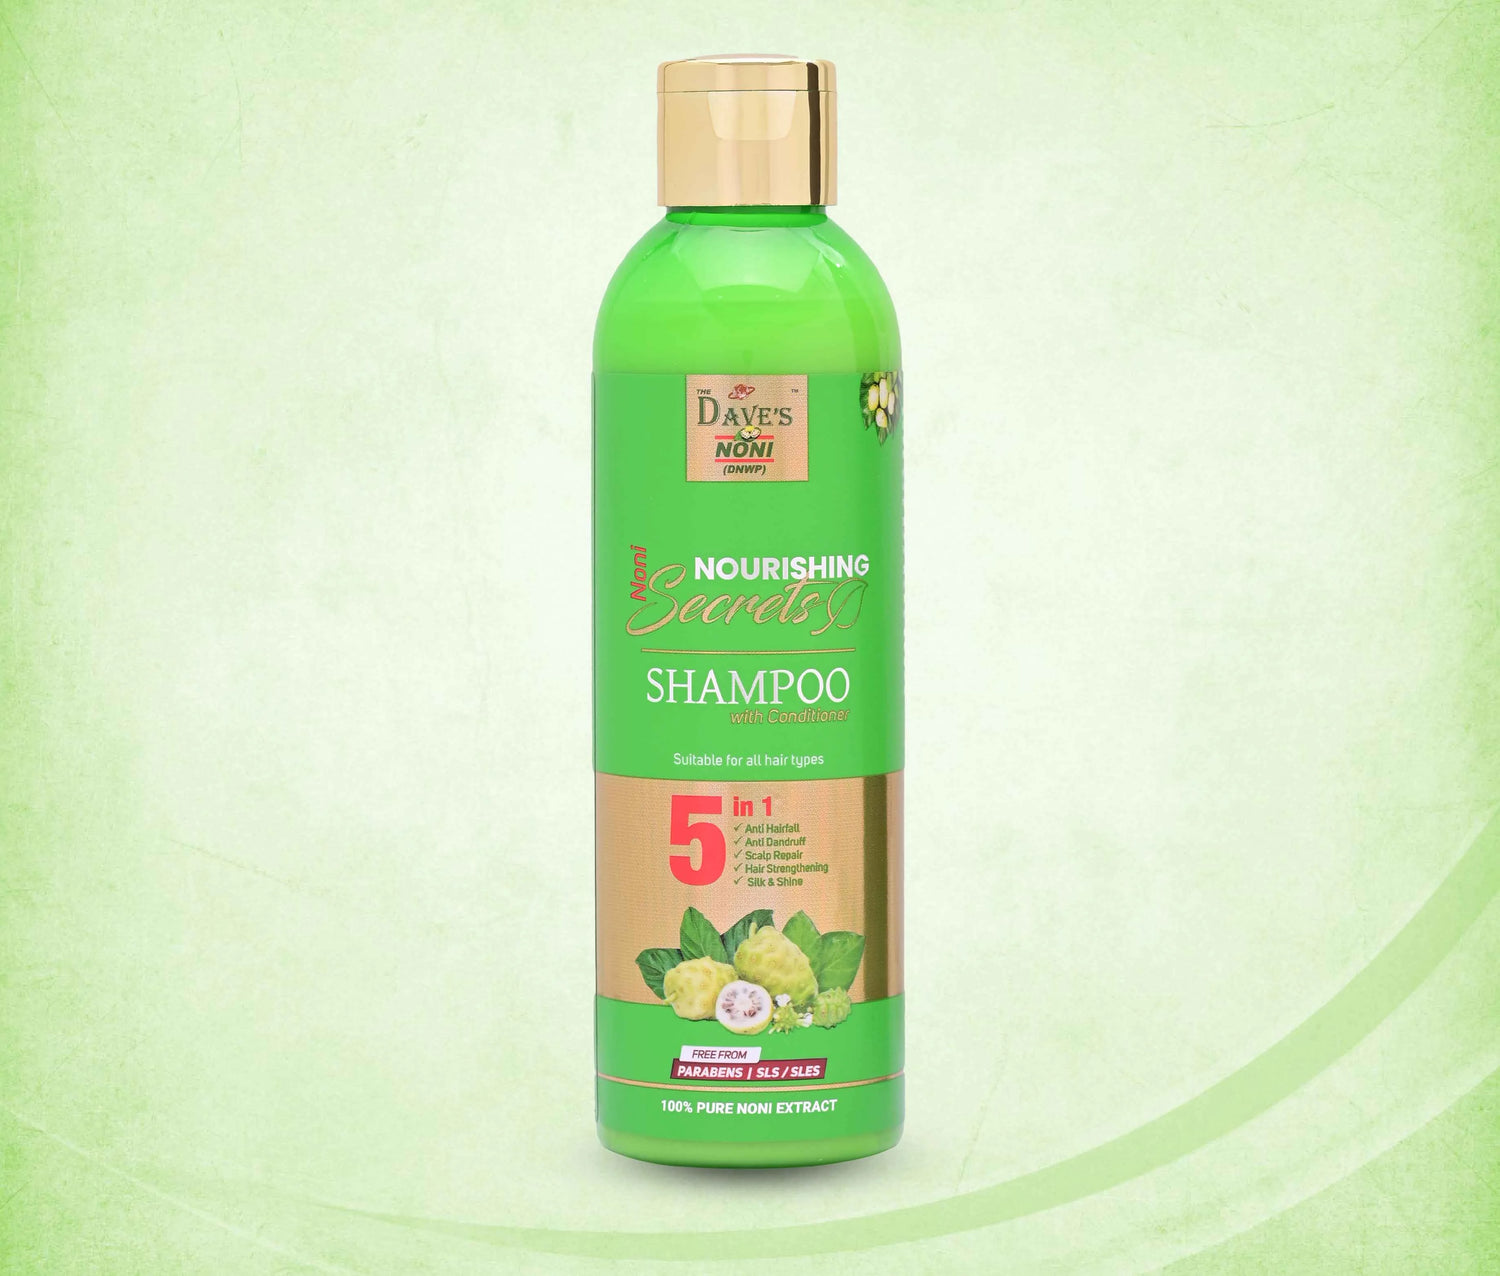 Noni Nourishing Secrets Shampoo